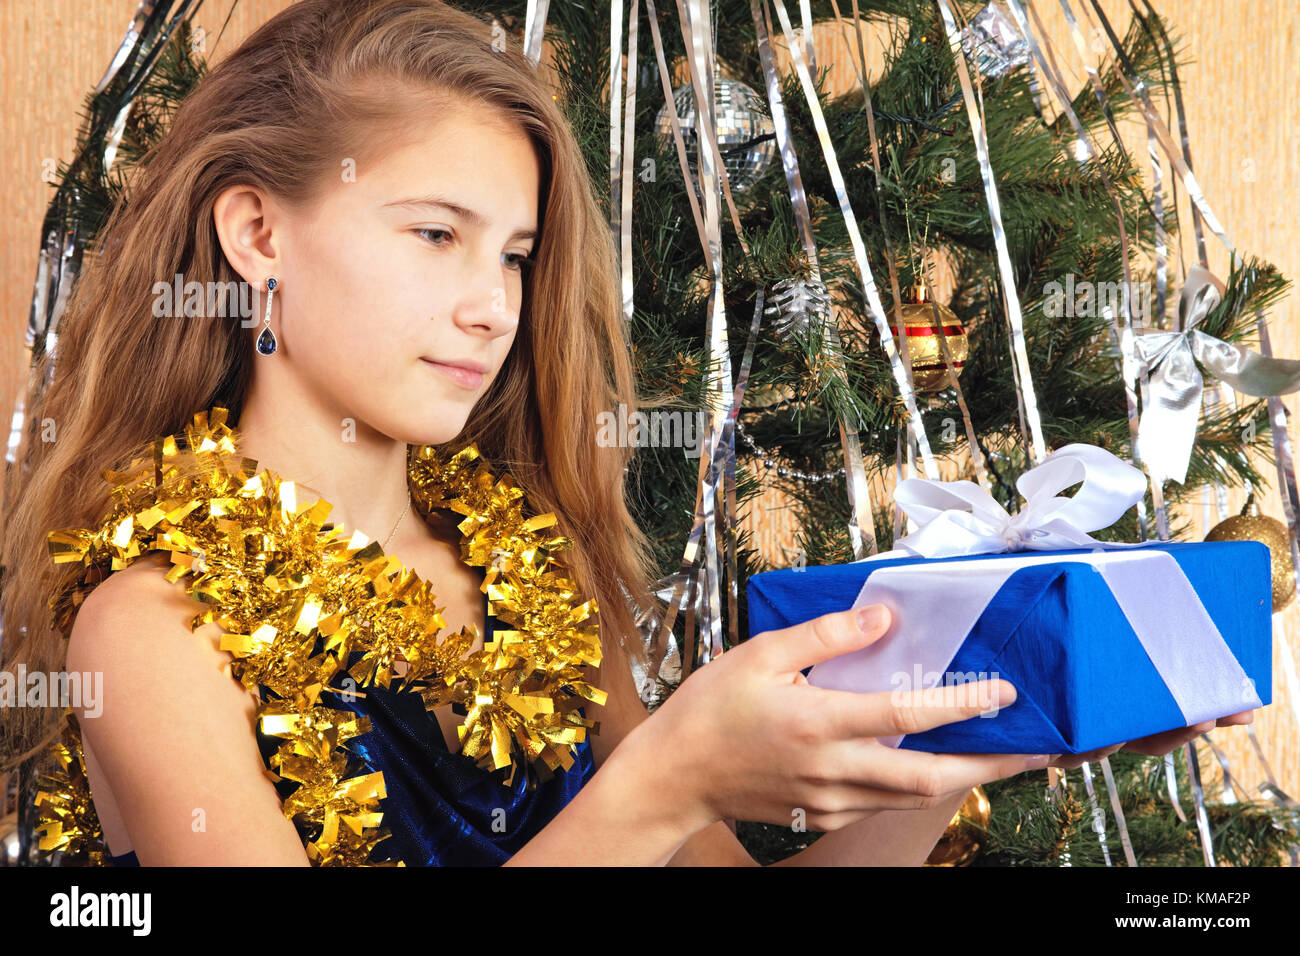 Schöne jugendlich Mädchen in der Nähe von Weihnachten Baum sieht glücklich auf Geschenk in ihren Händen Stockfoto